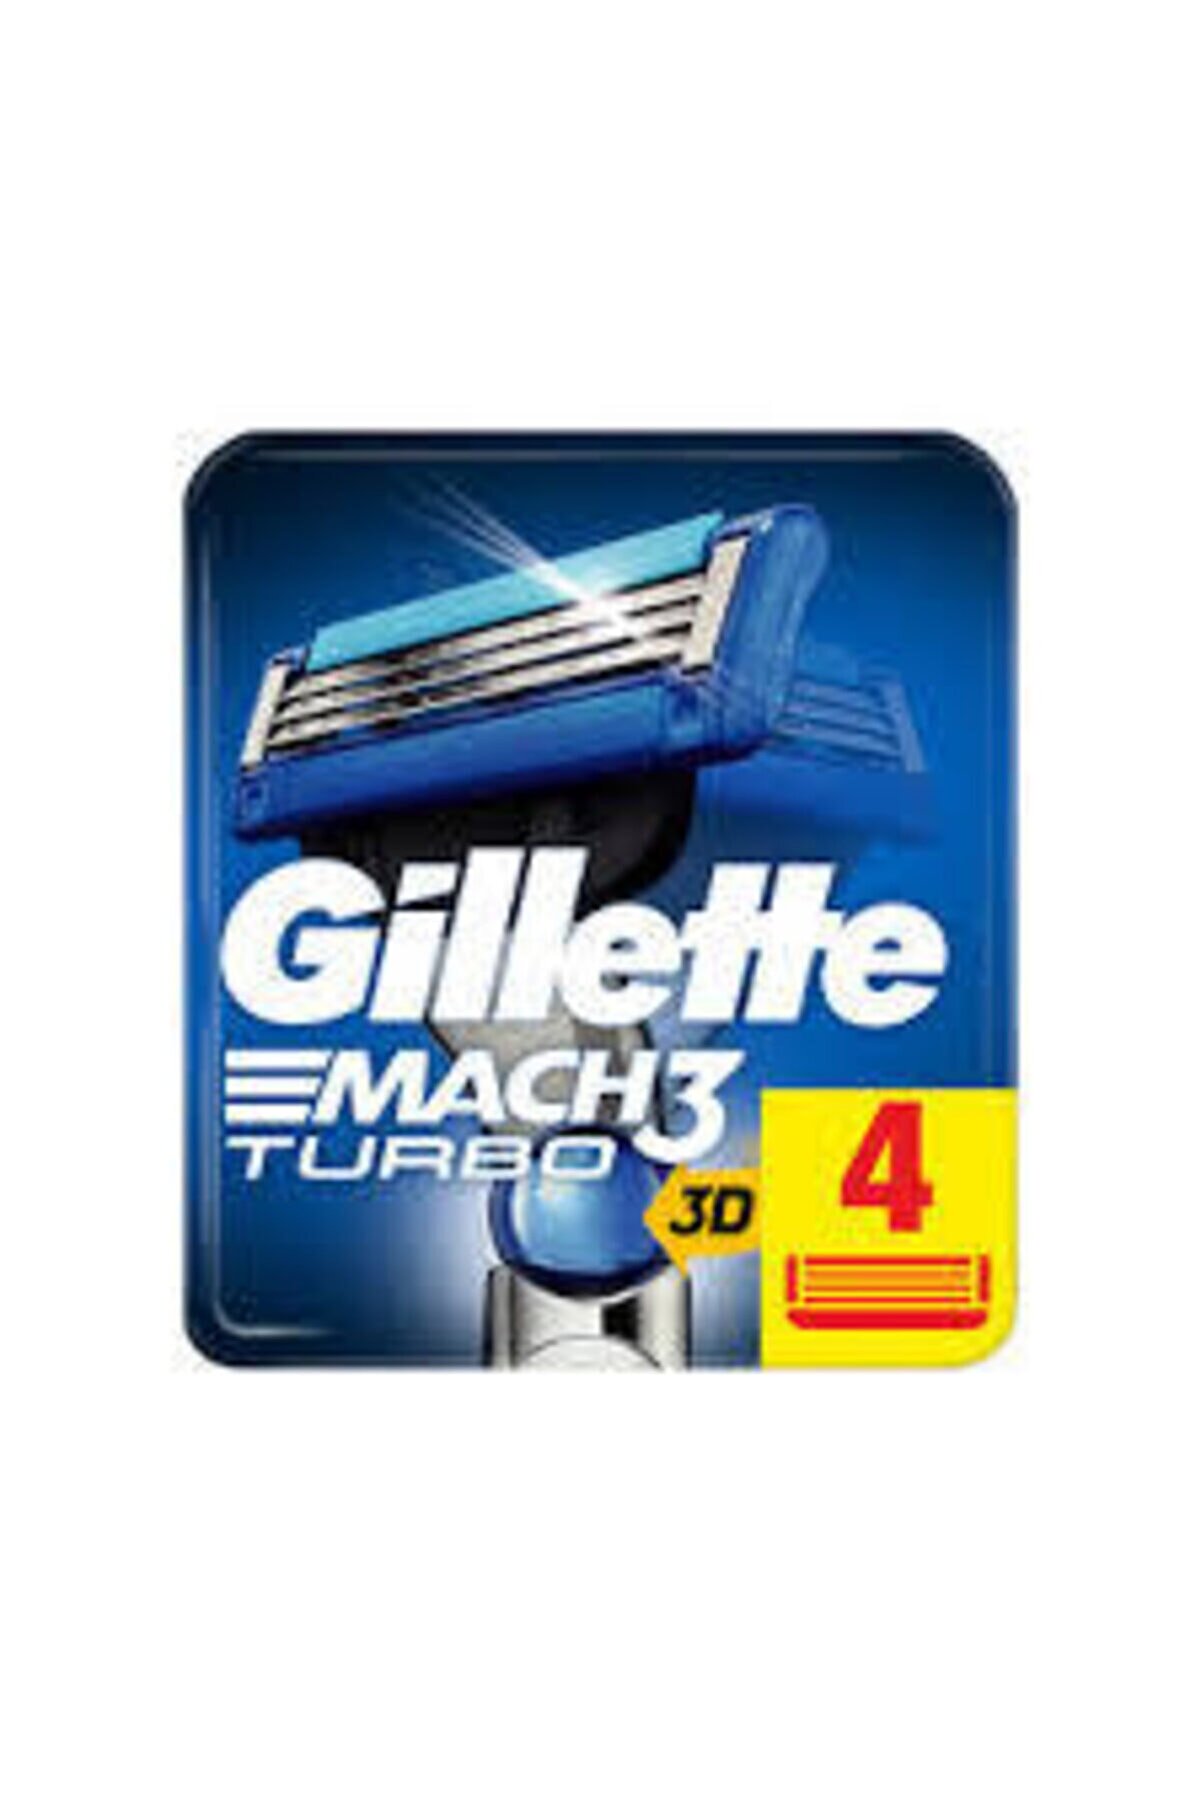 Gillette Mach3 Turbo Yedek Tıraş Bıçağı 4lü